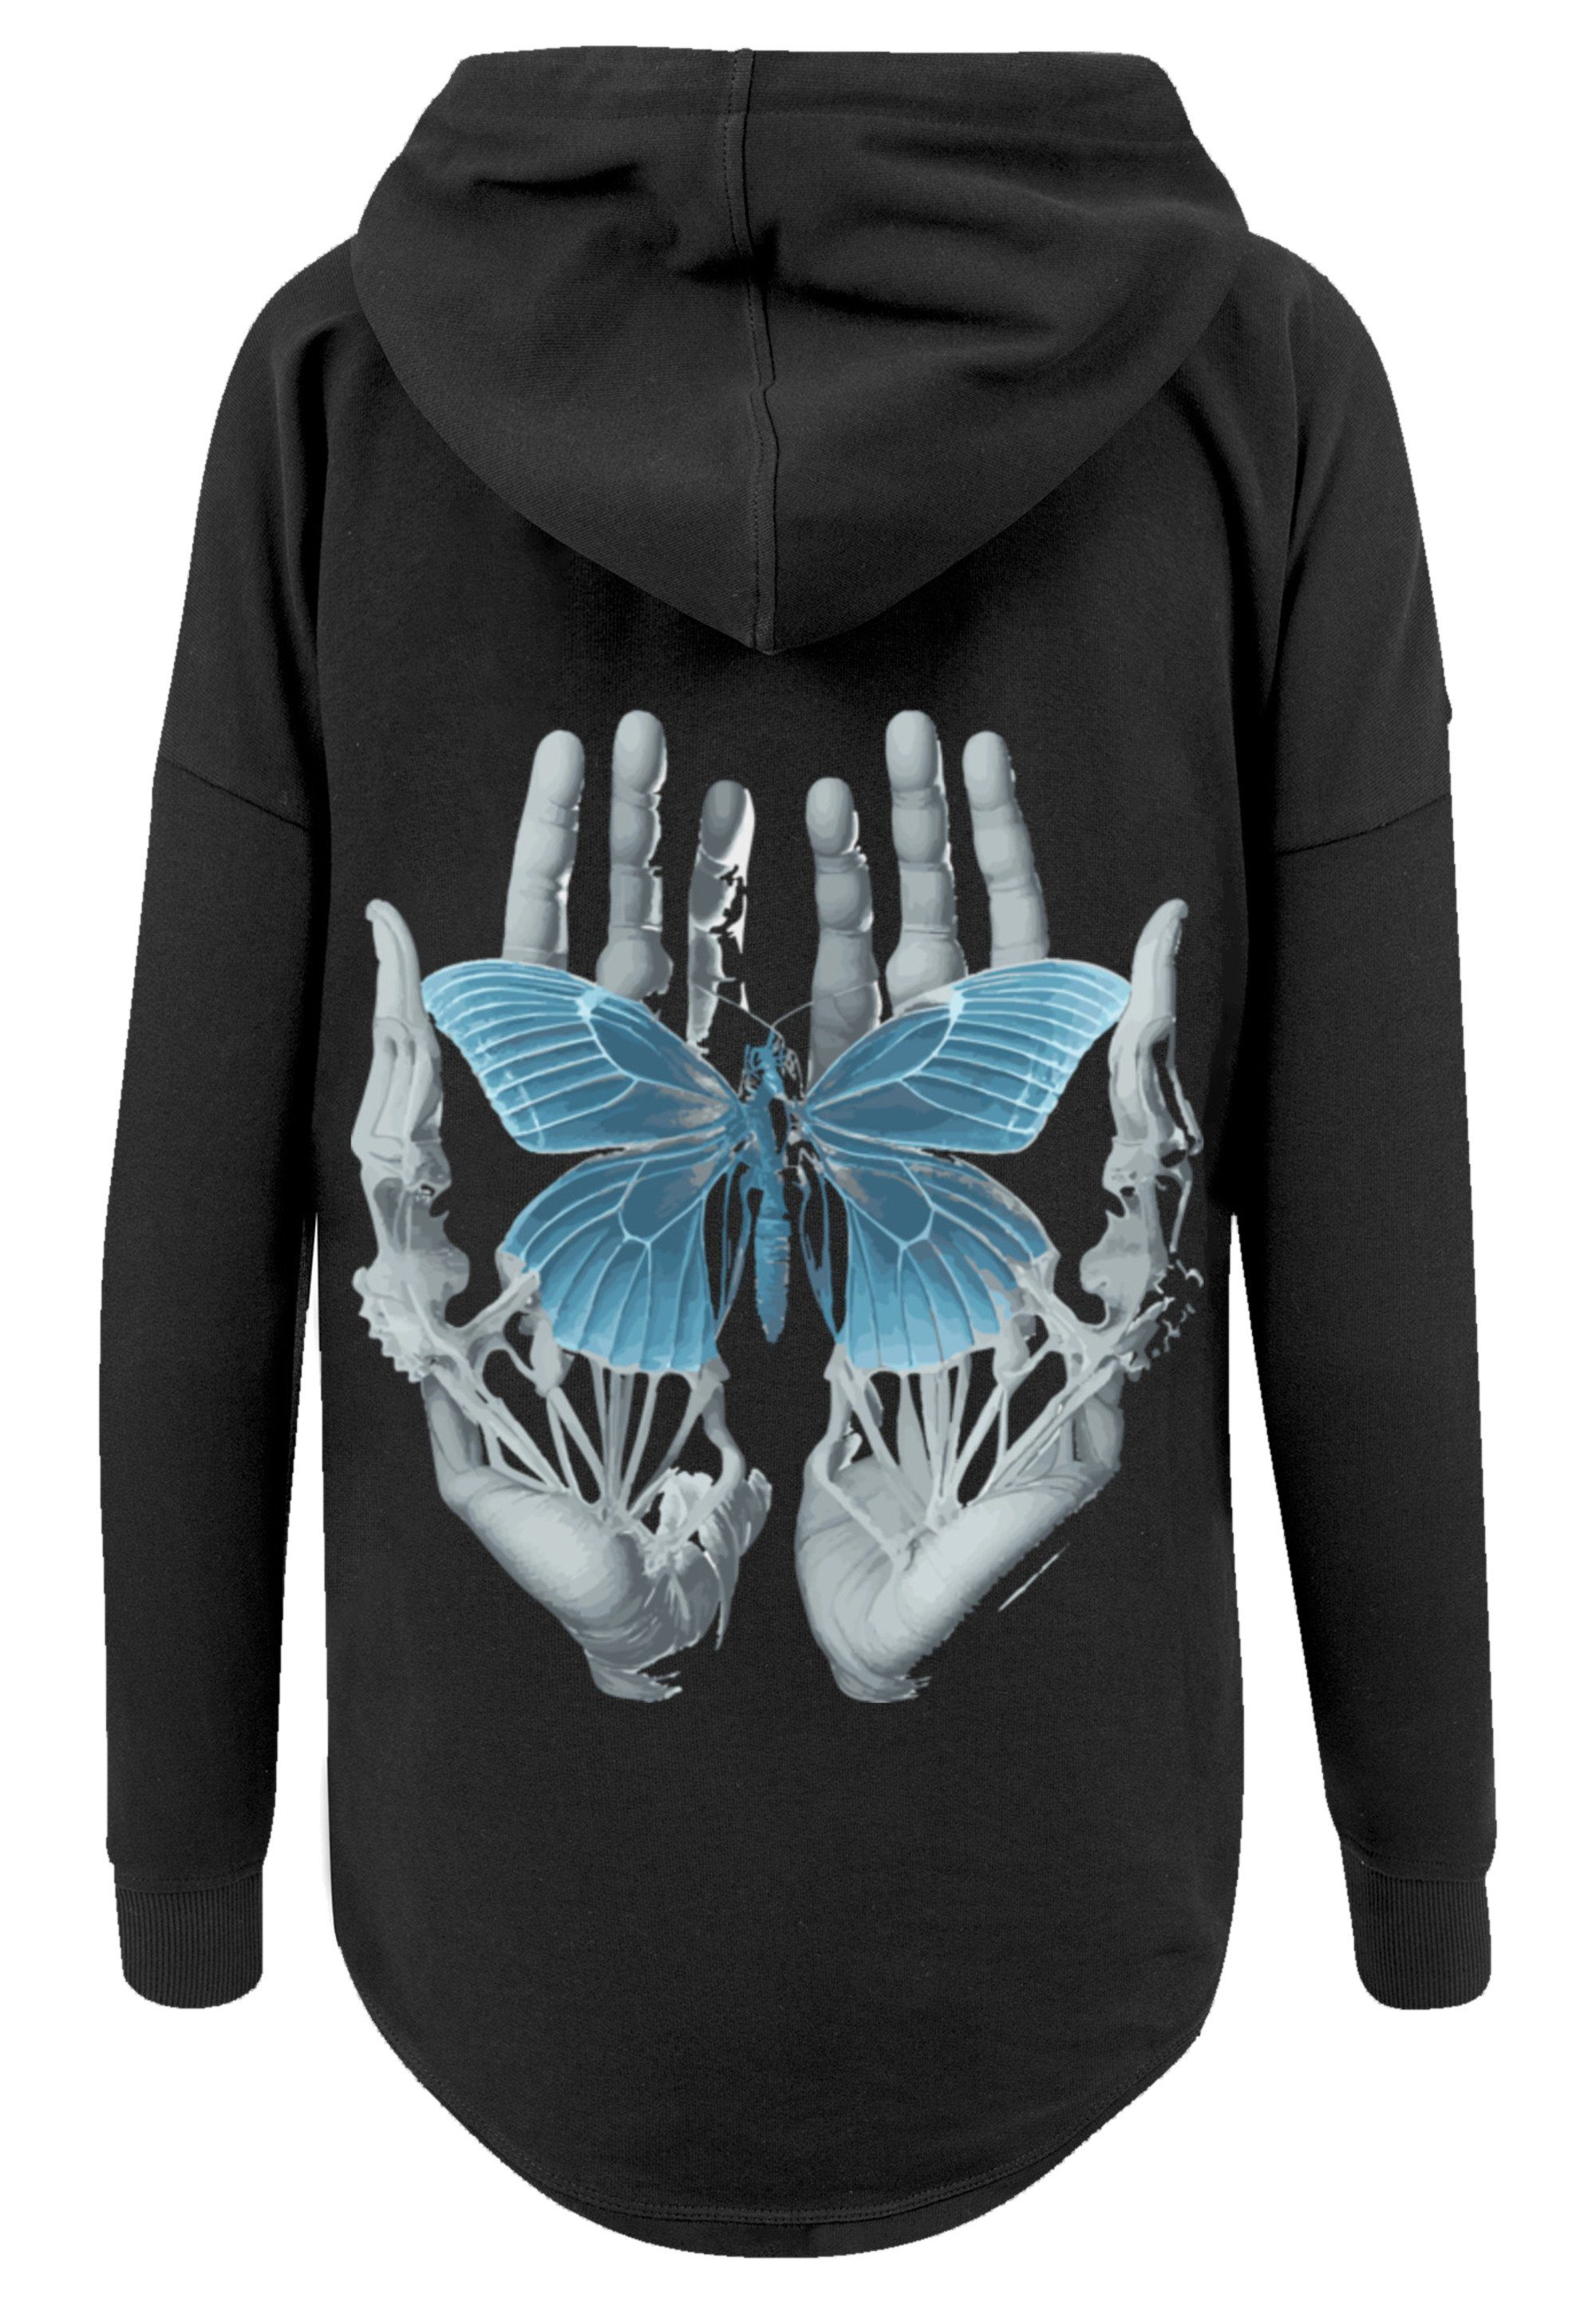 Skelett Schmetterling Kapuzenpullover schwarz Hände Print F4NT4STIC